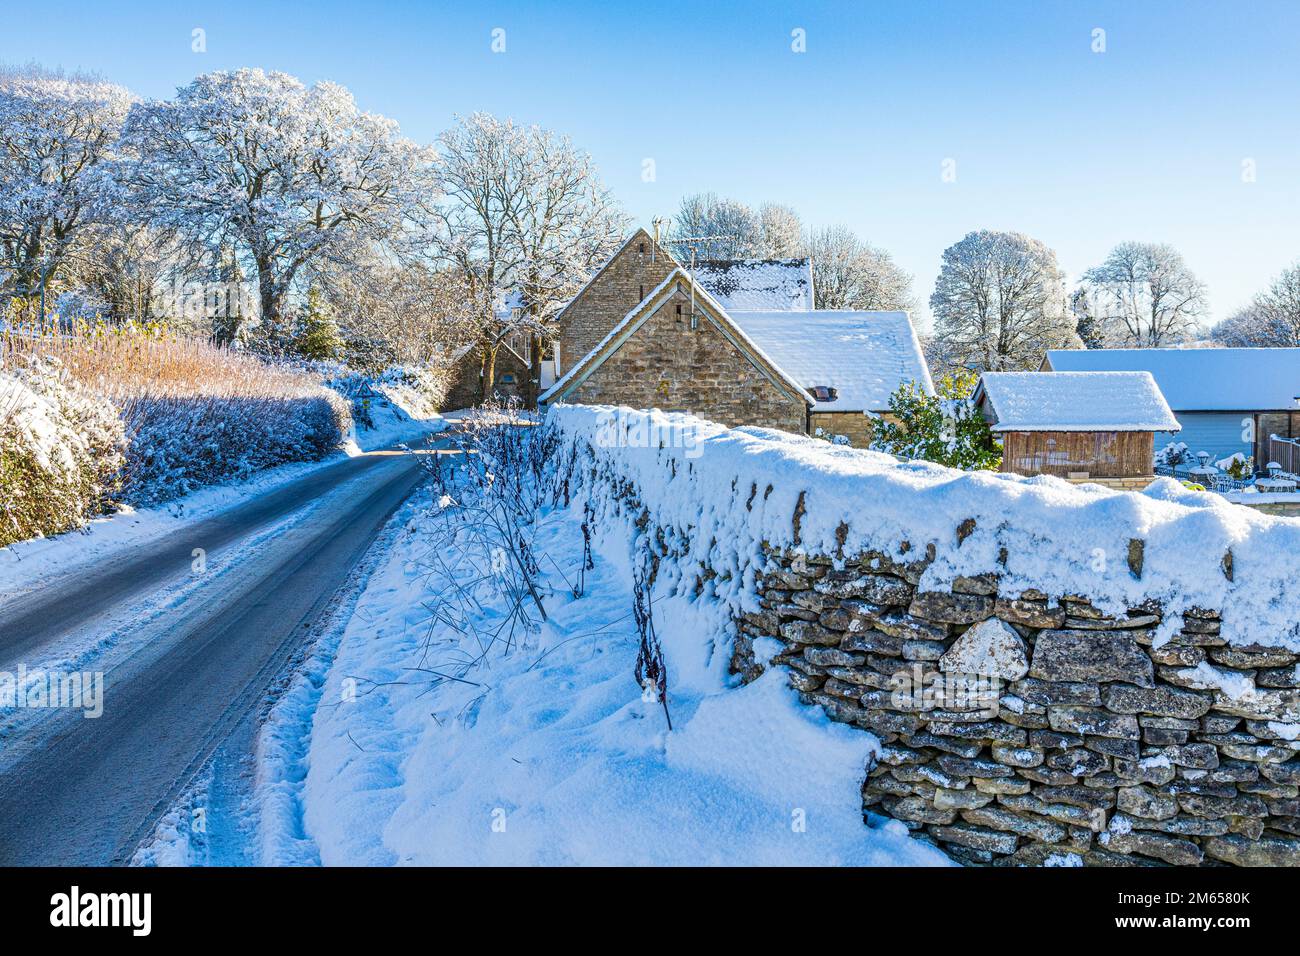 Neige au début de l'hiver au village de Brimpsfield, Gloucestershire, Angleterre, Royaume-Uni Banque D'Images